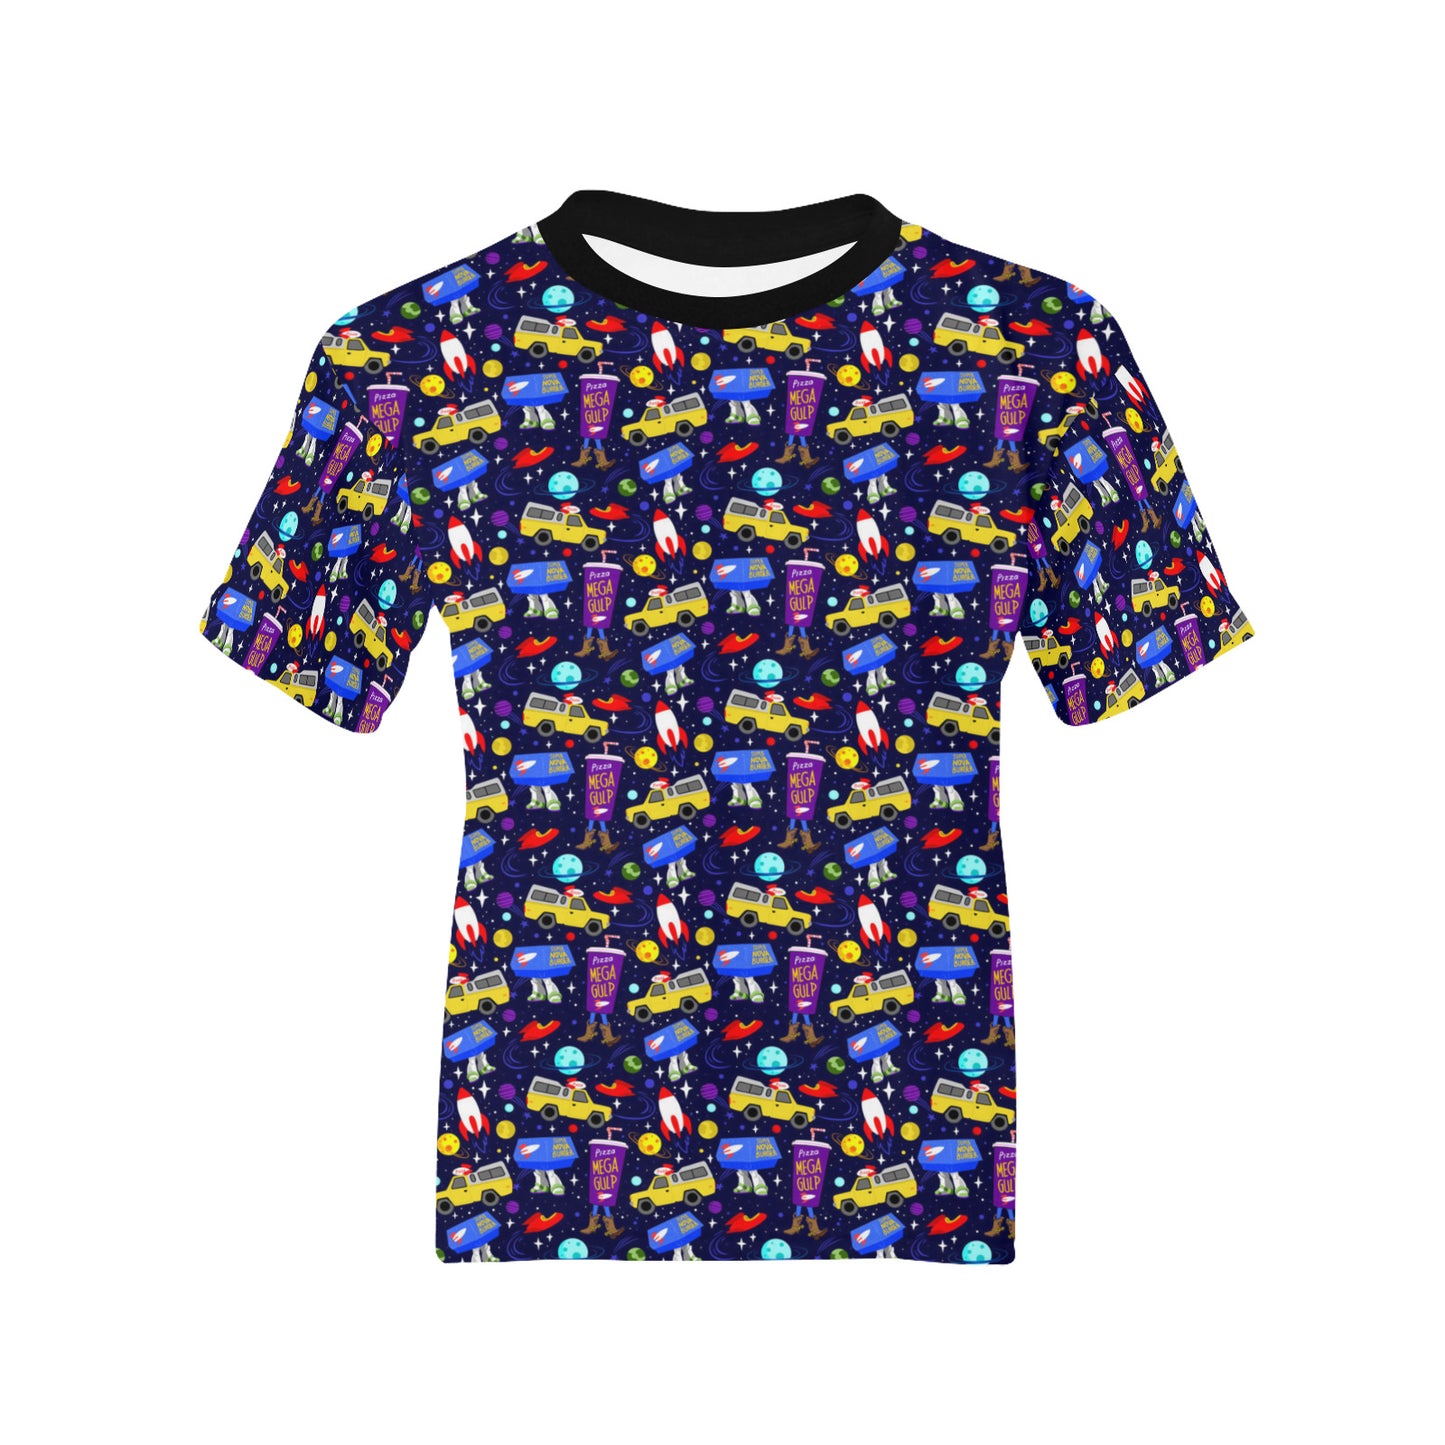 Arcade Pizza Kids' T-shirt